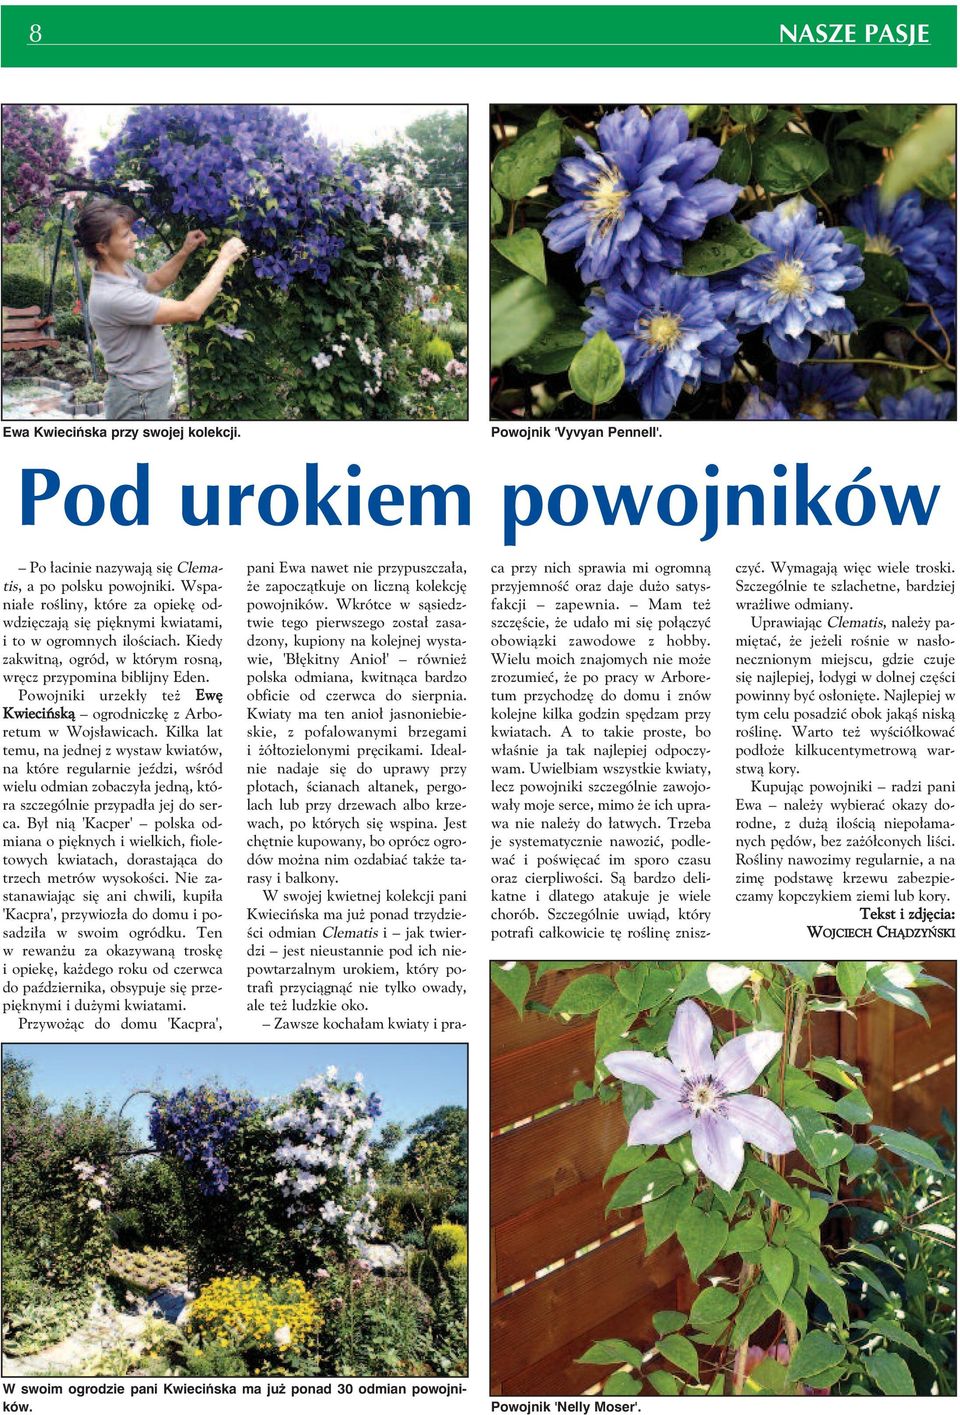 Powojniki urzekły też Ewę Kwiecińską ogrodniczkę z Arboretum w Wojsławicach.